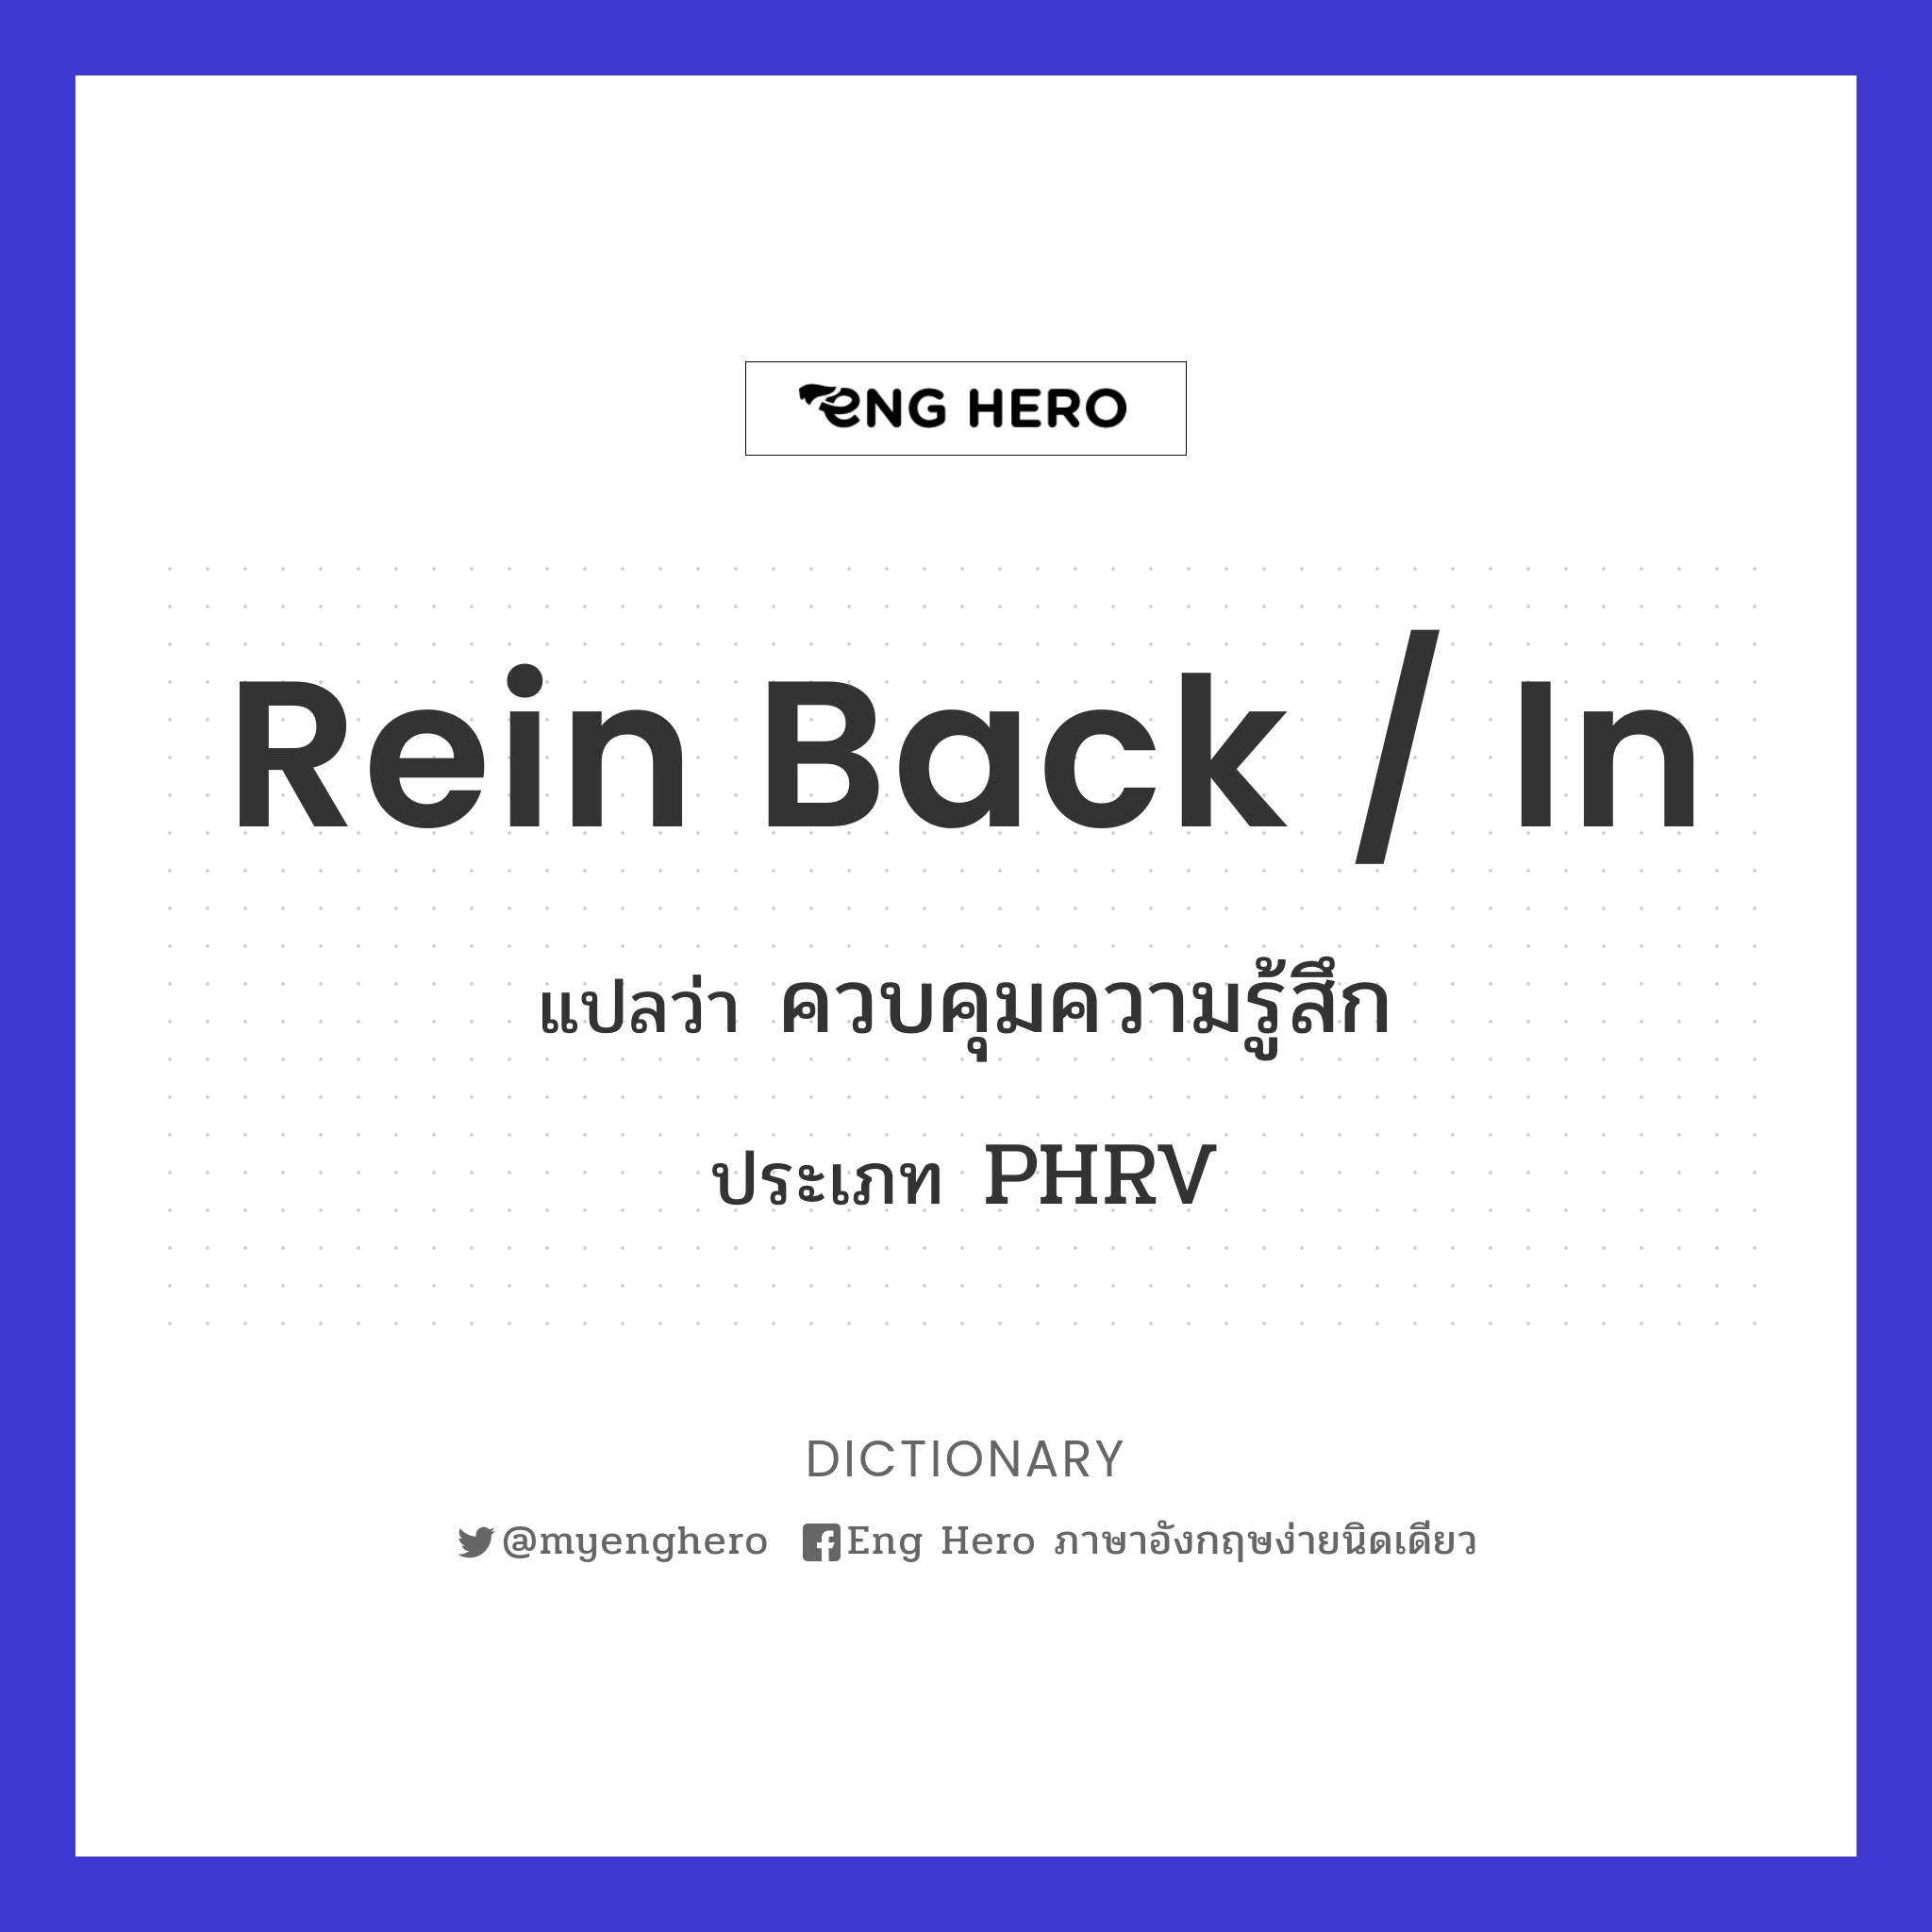 rein back / in